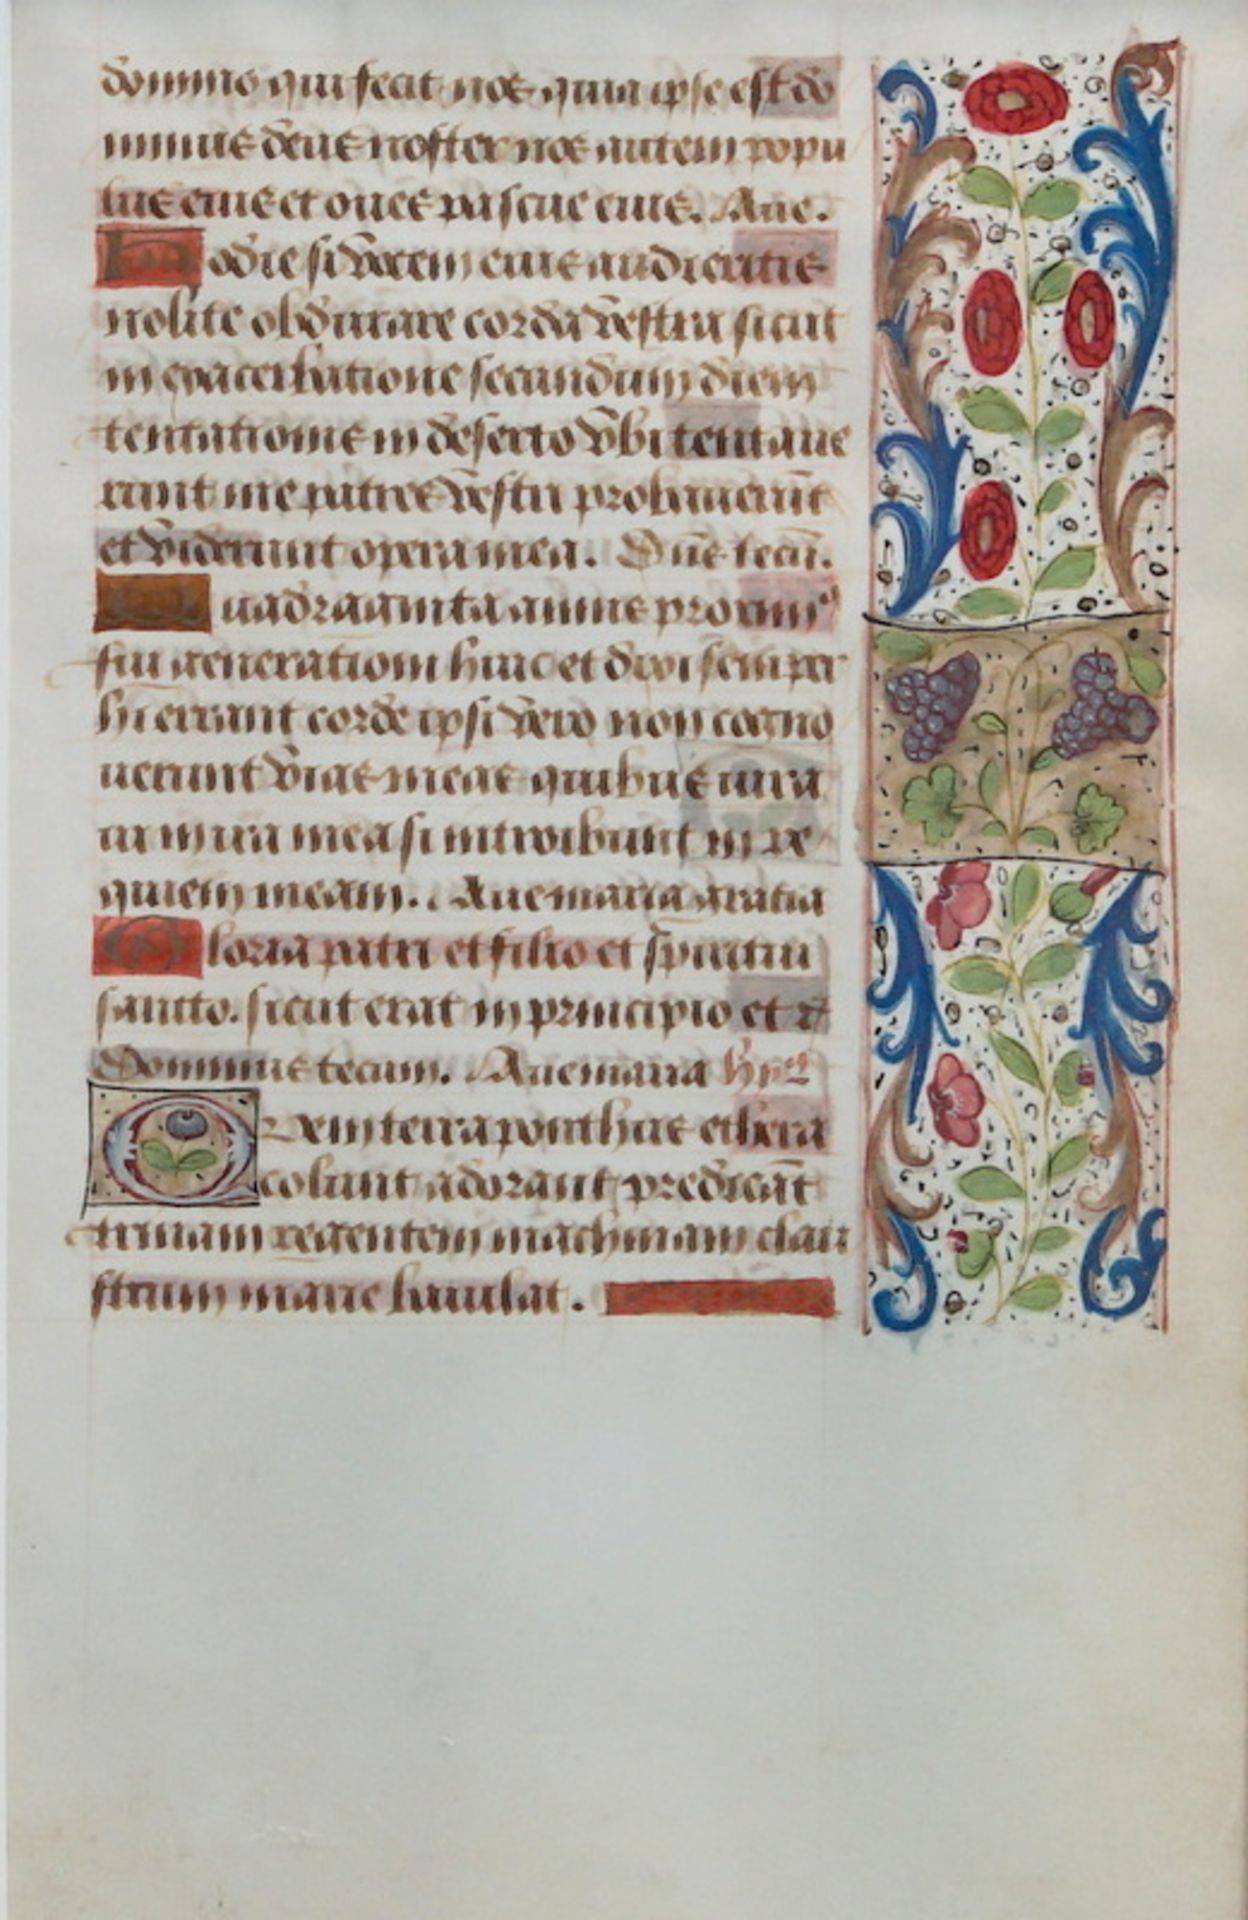 Pergamenthandschrift aus einem Stundenbuch 15. Jh. - Image 2 of 2